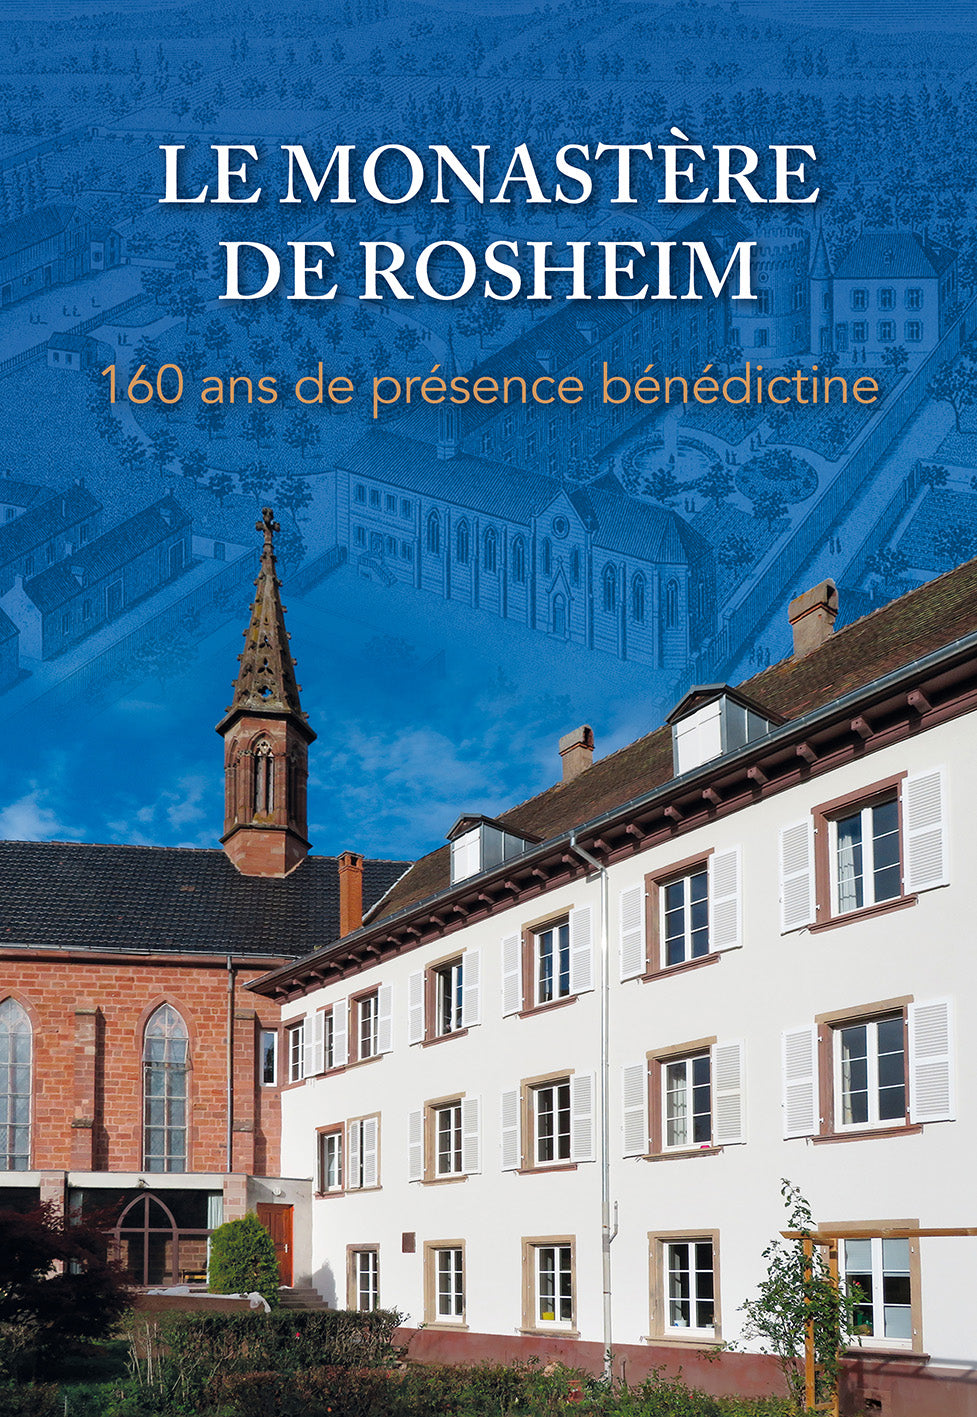 Le Monastère de Rosheim, 160 ans de présence bénédictine